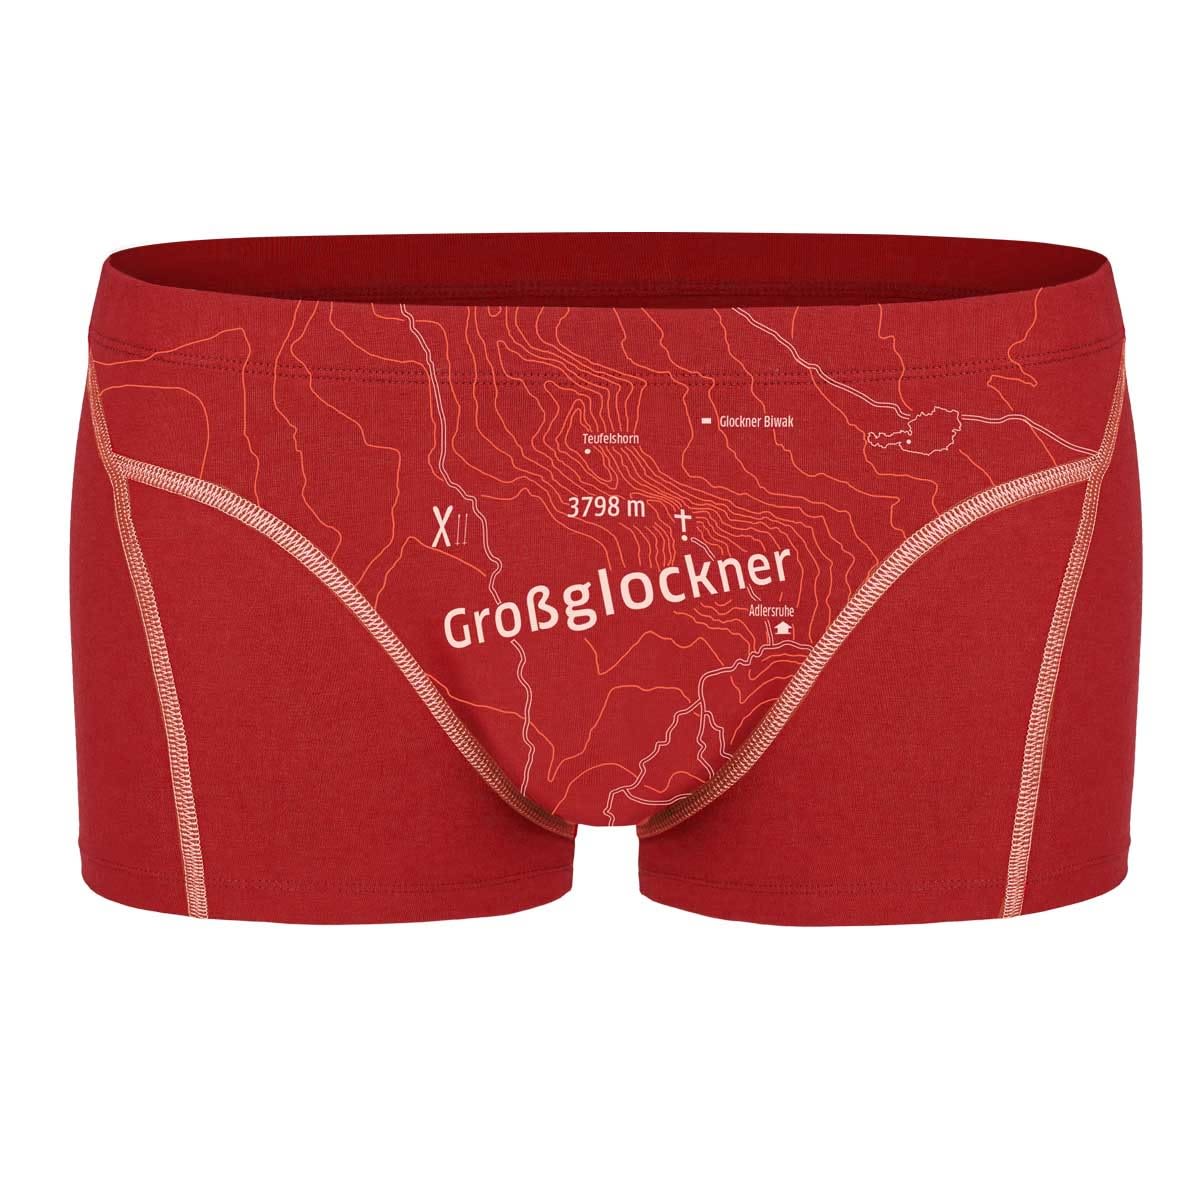 Ein schöner Fleck Erde Grossglockner Boxer Rot, Male Kurze Unterhosen, Größe XXL - Farbe Karminrot 2304.13